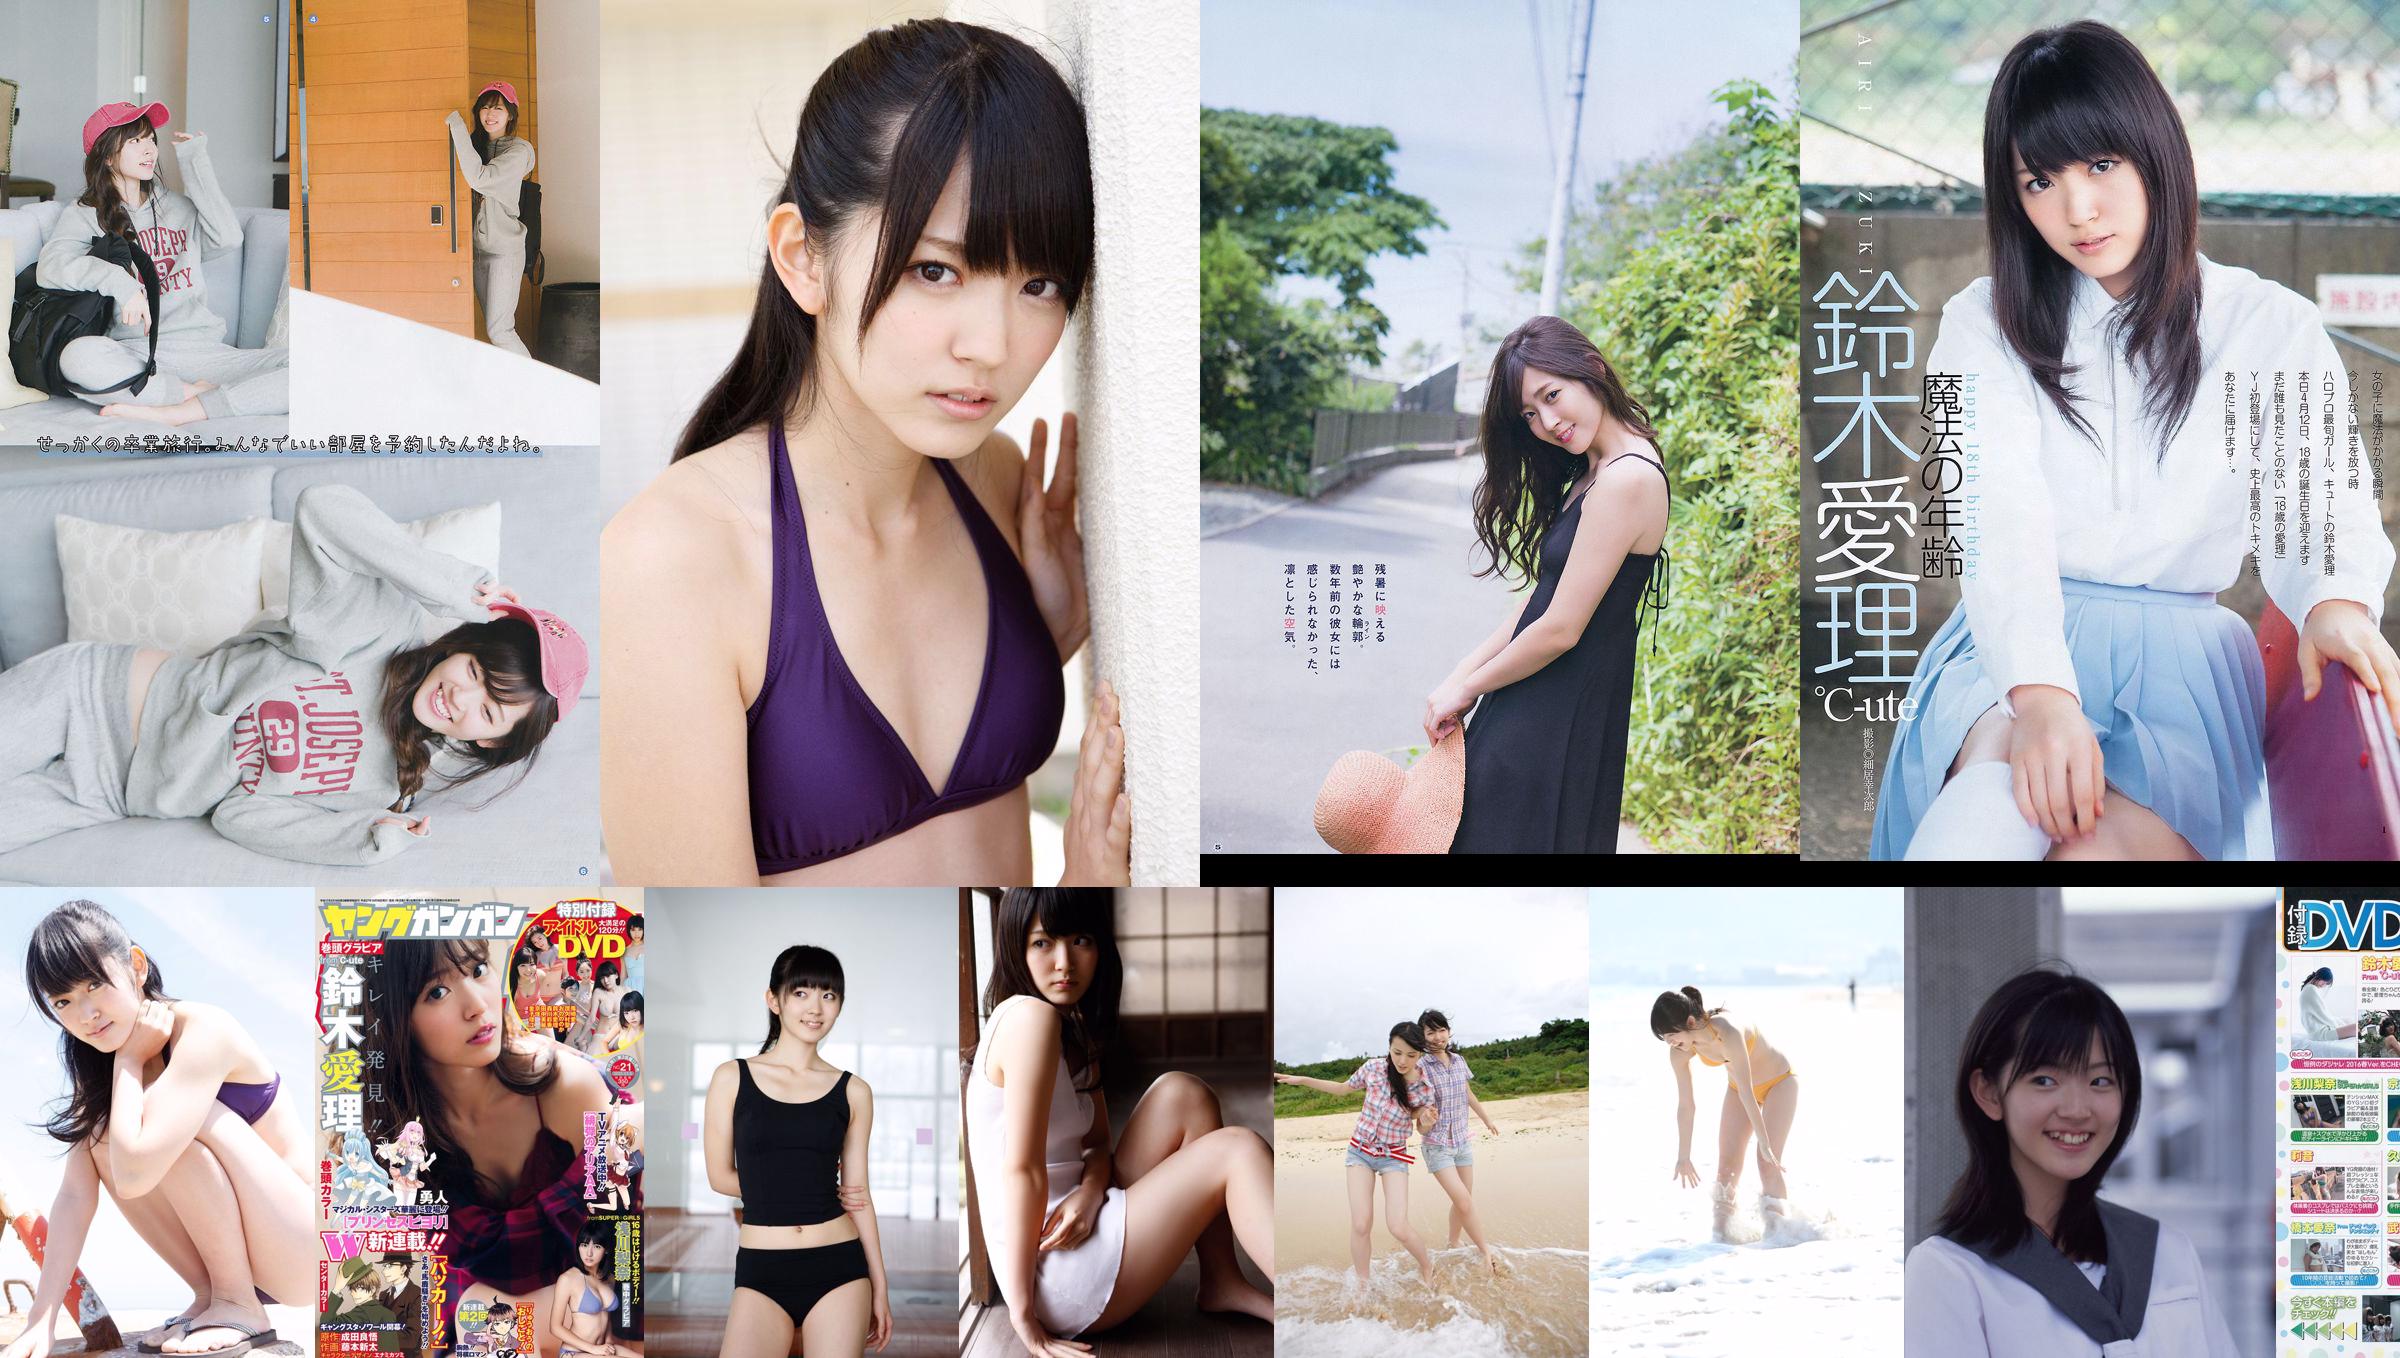 [Jeune Gangan] Suzuki Airi Asakawa Rina Fuji City Ann 2015 No.21 Photo Magazine No.11ebea Page 7